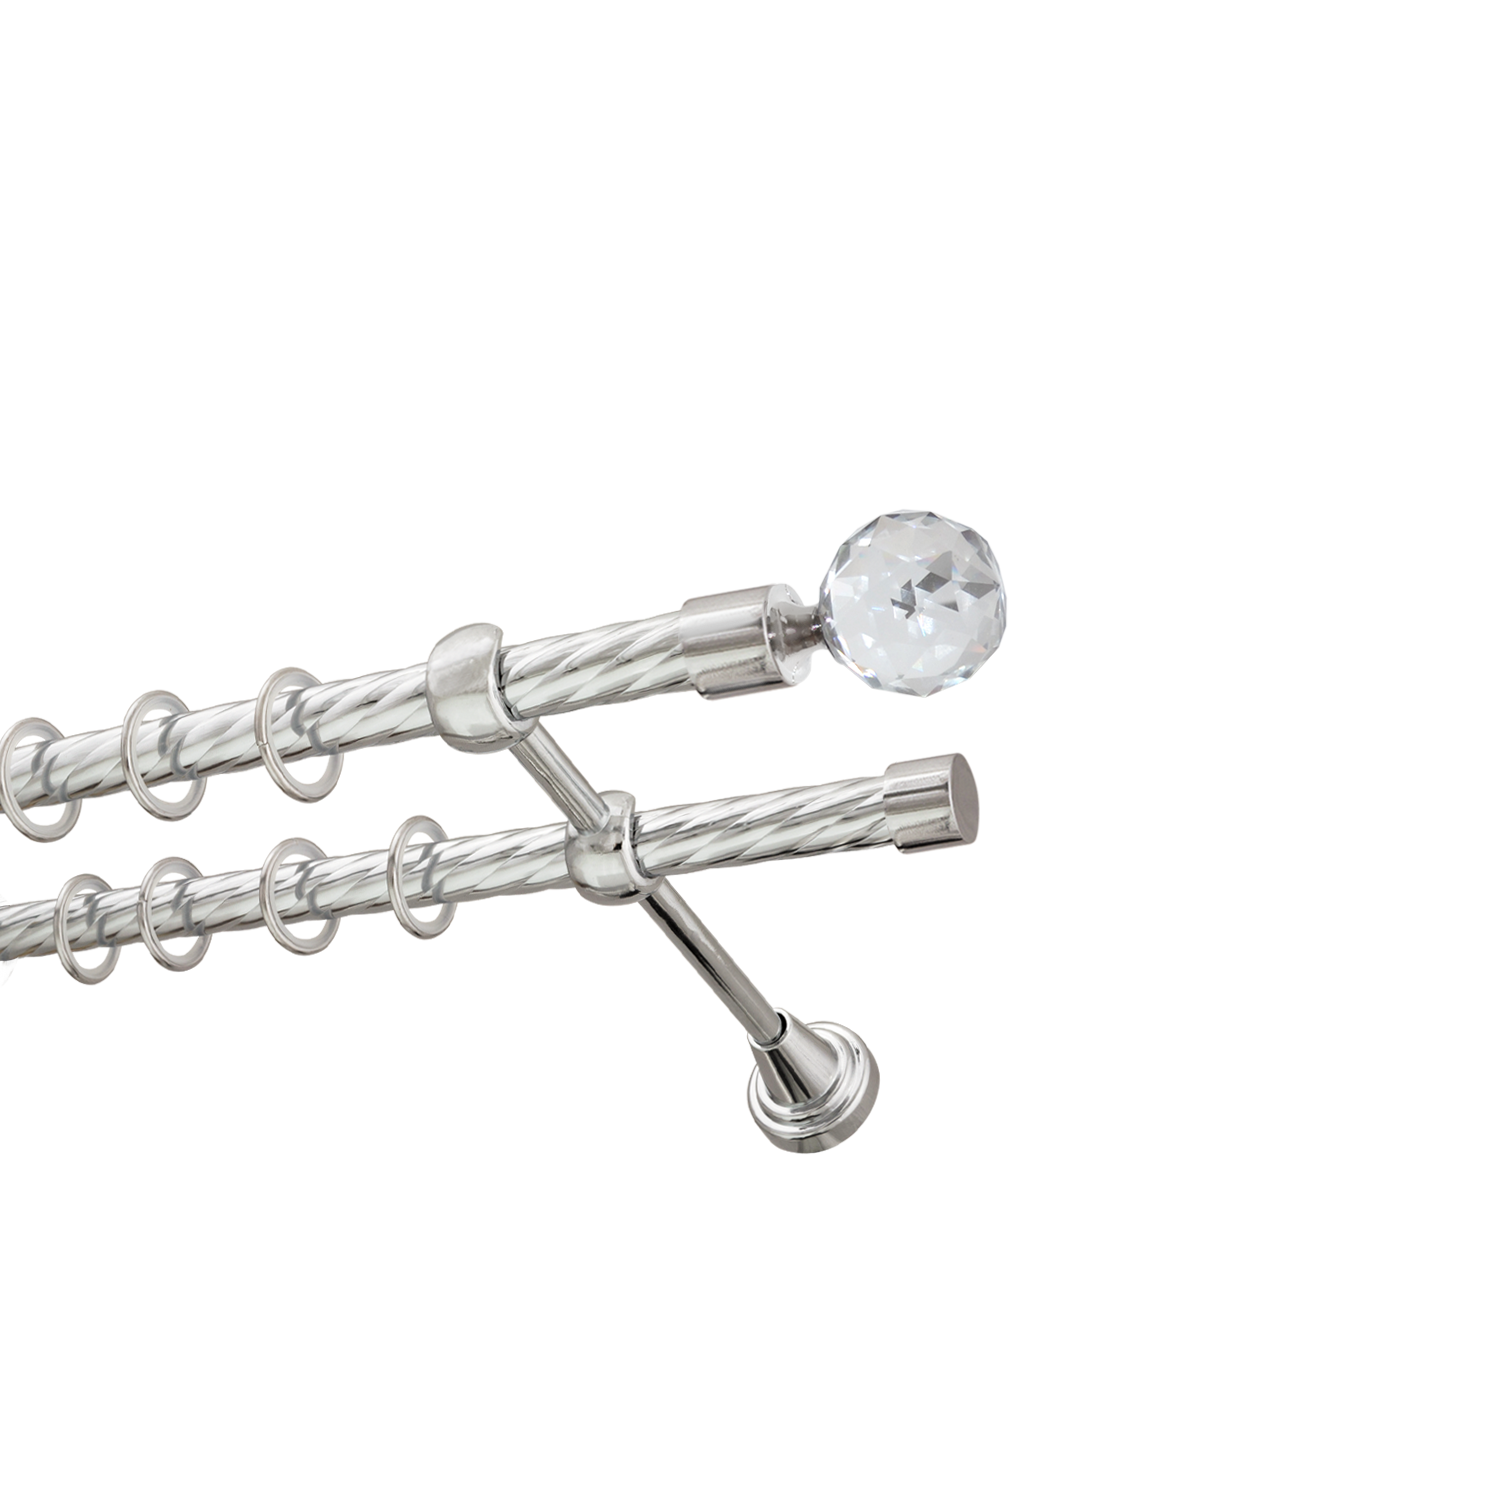 Металлический карниз для штор Карат, двухрядный 16/16 мм, серебро, витая штанга, длина 140 см